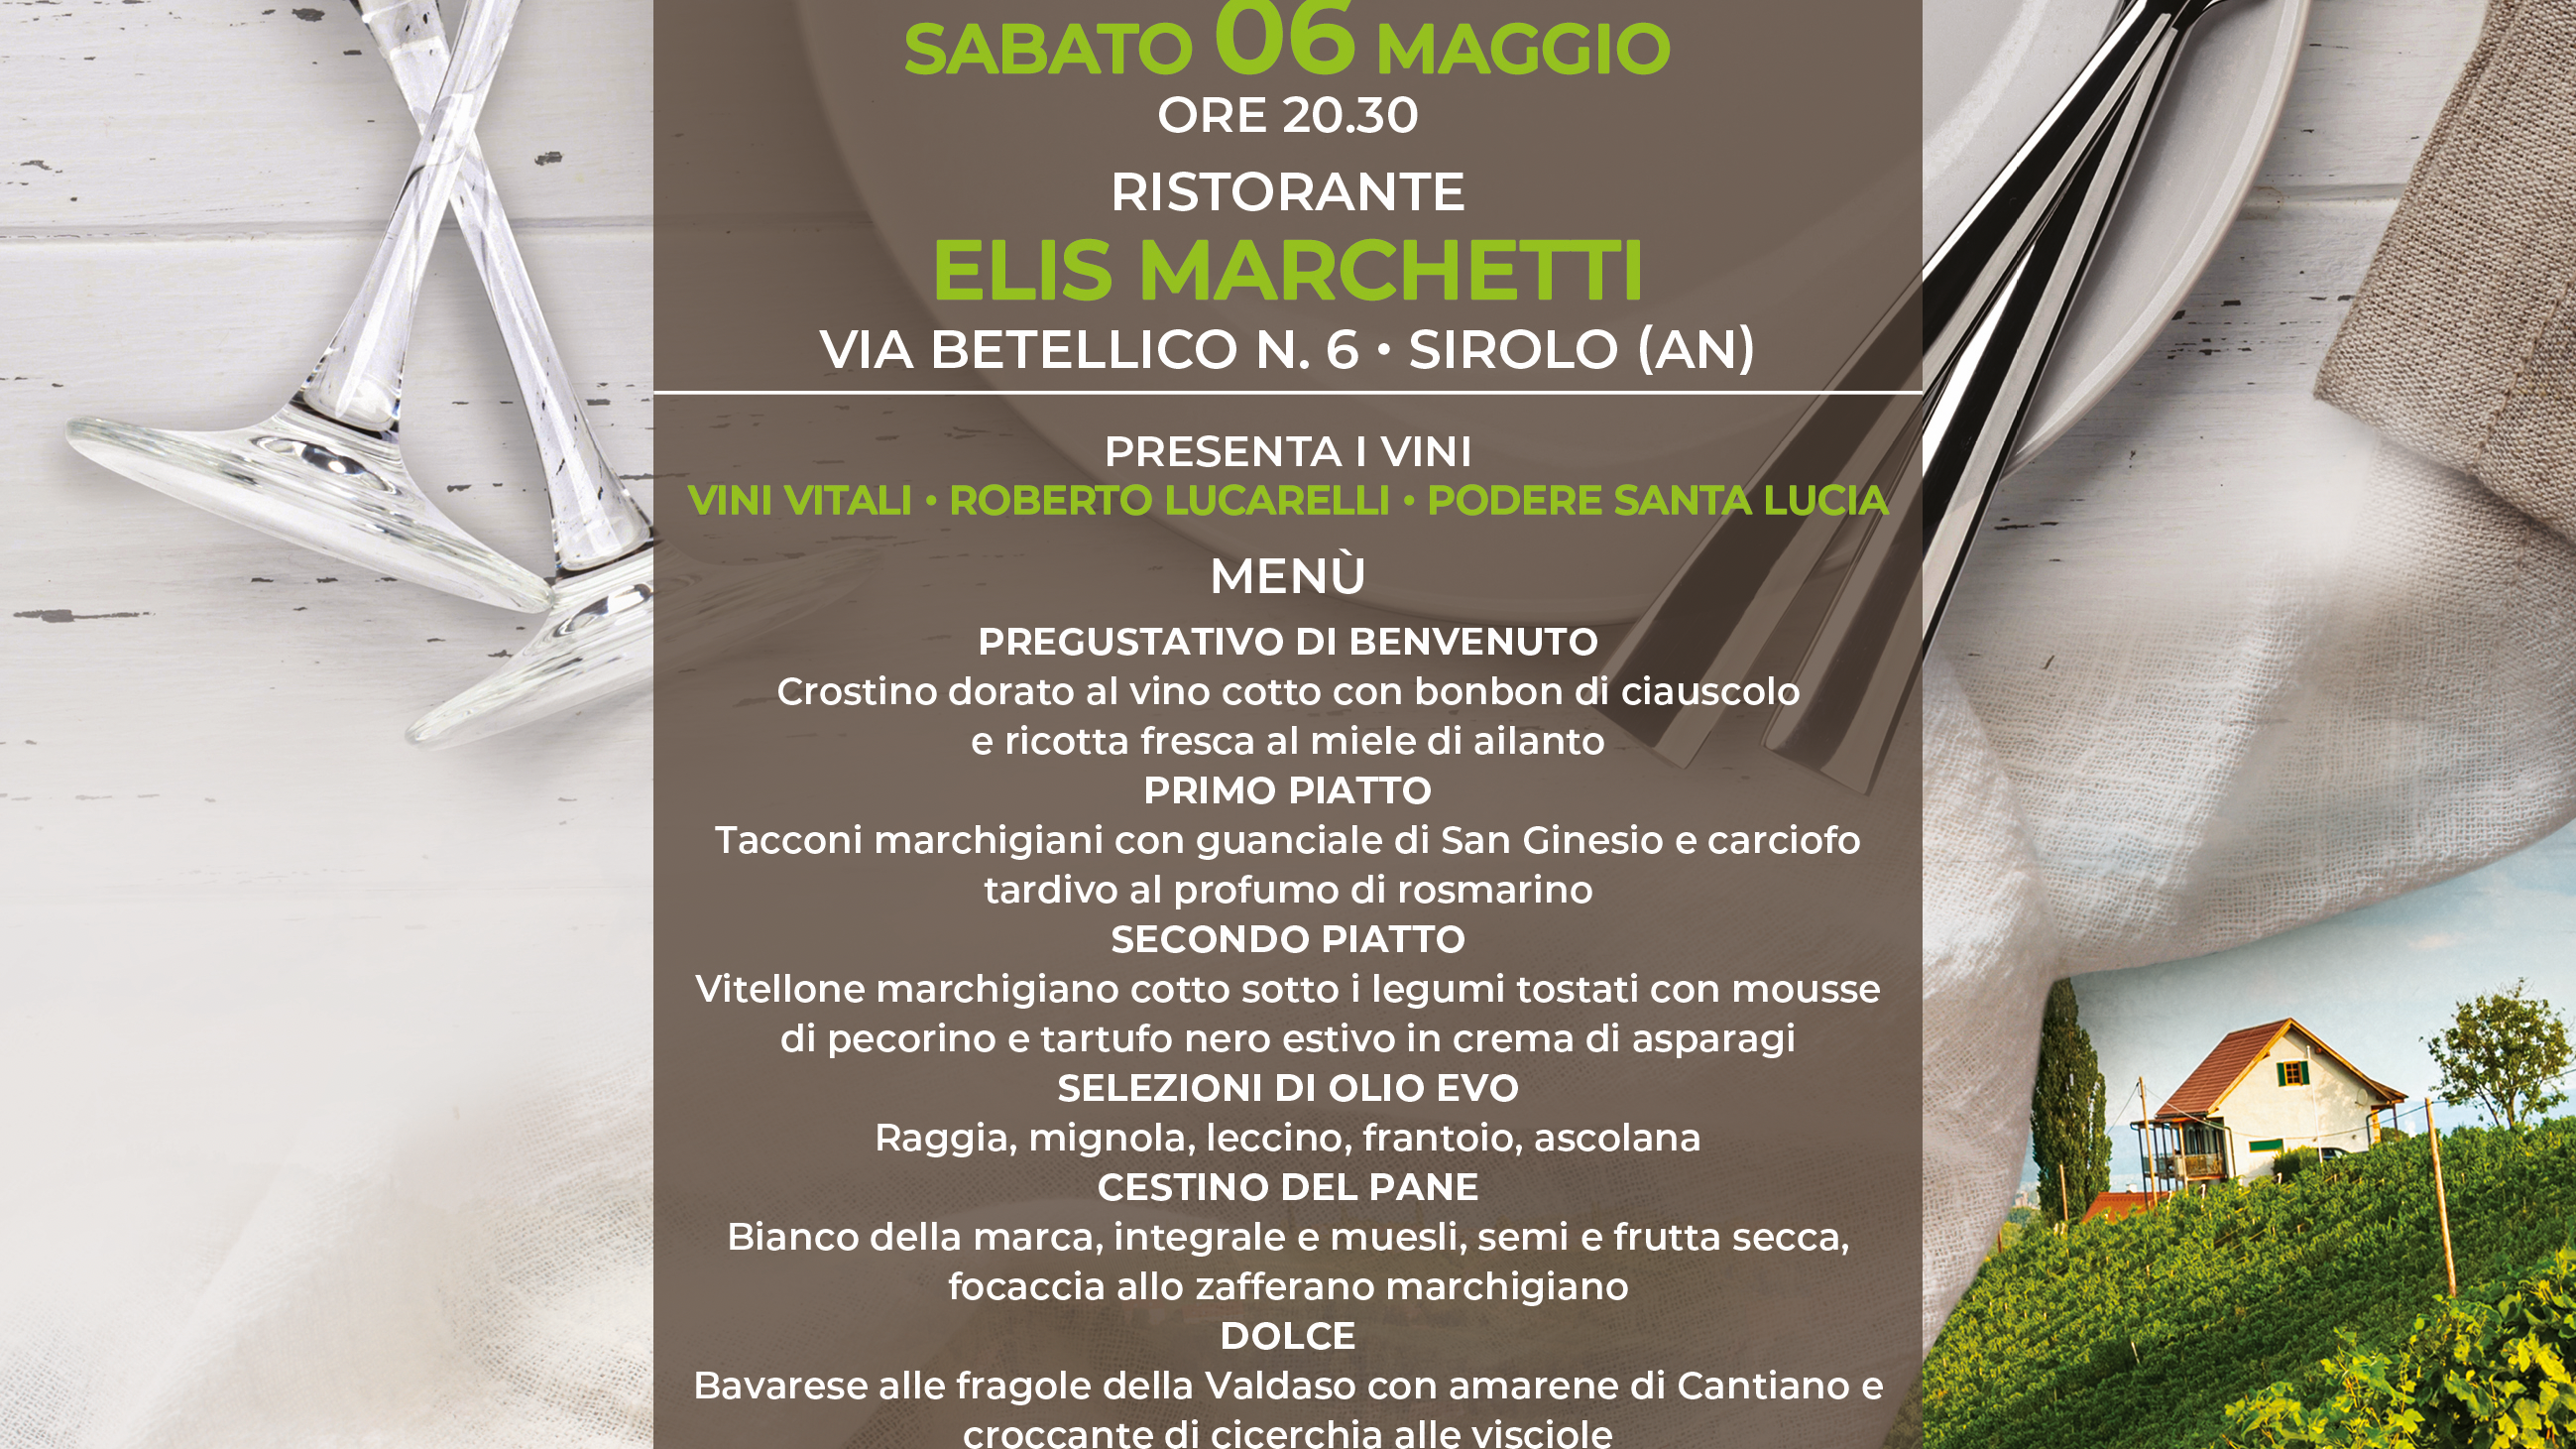 MARCHE & WINE ENOTURISMO "Ristorante Elis Marchetti"